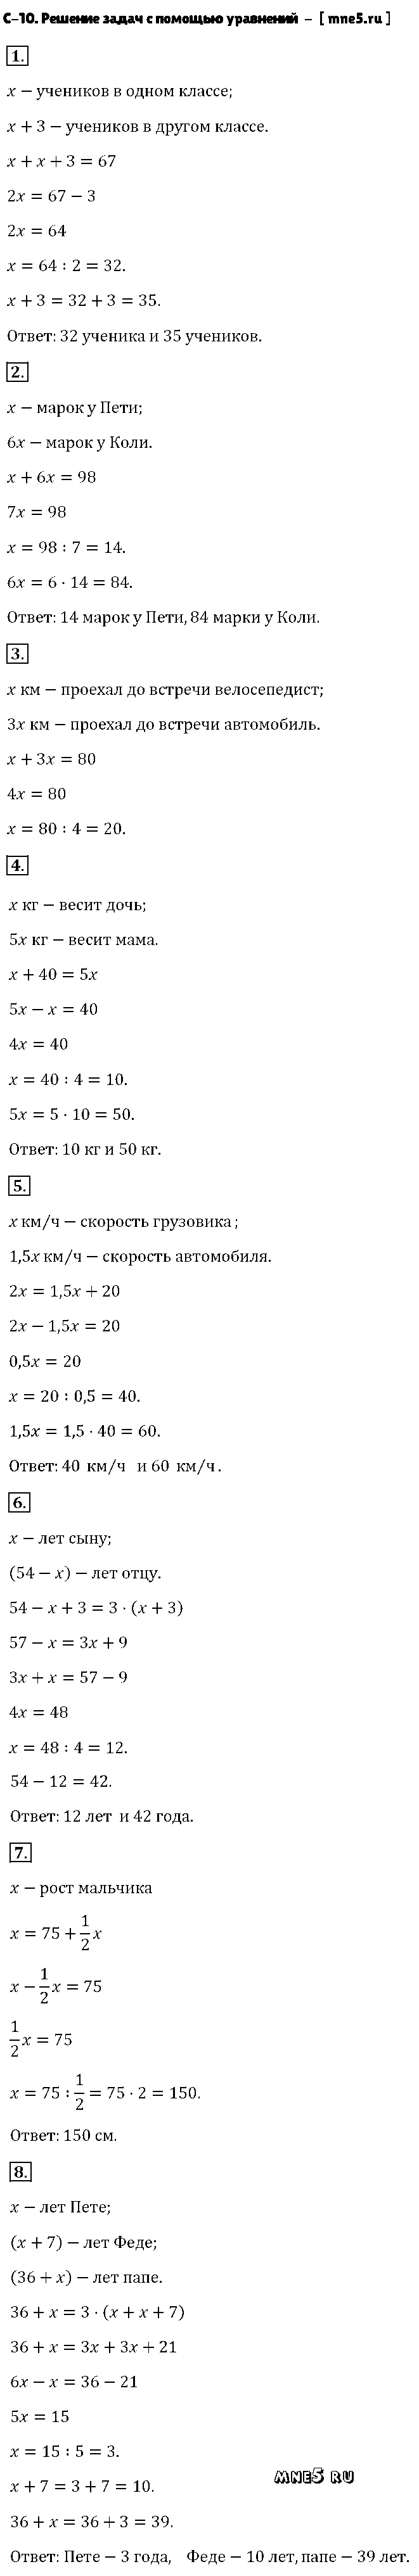 ГДЗ Алгебра 7 класс - С-10. Решение задач с помощью уравнений